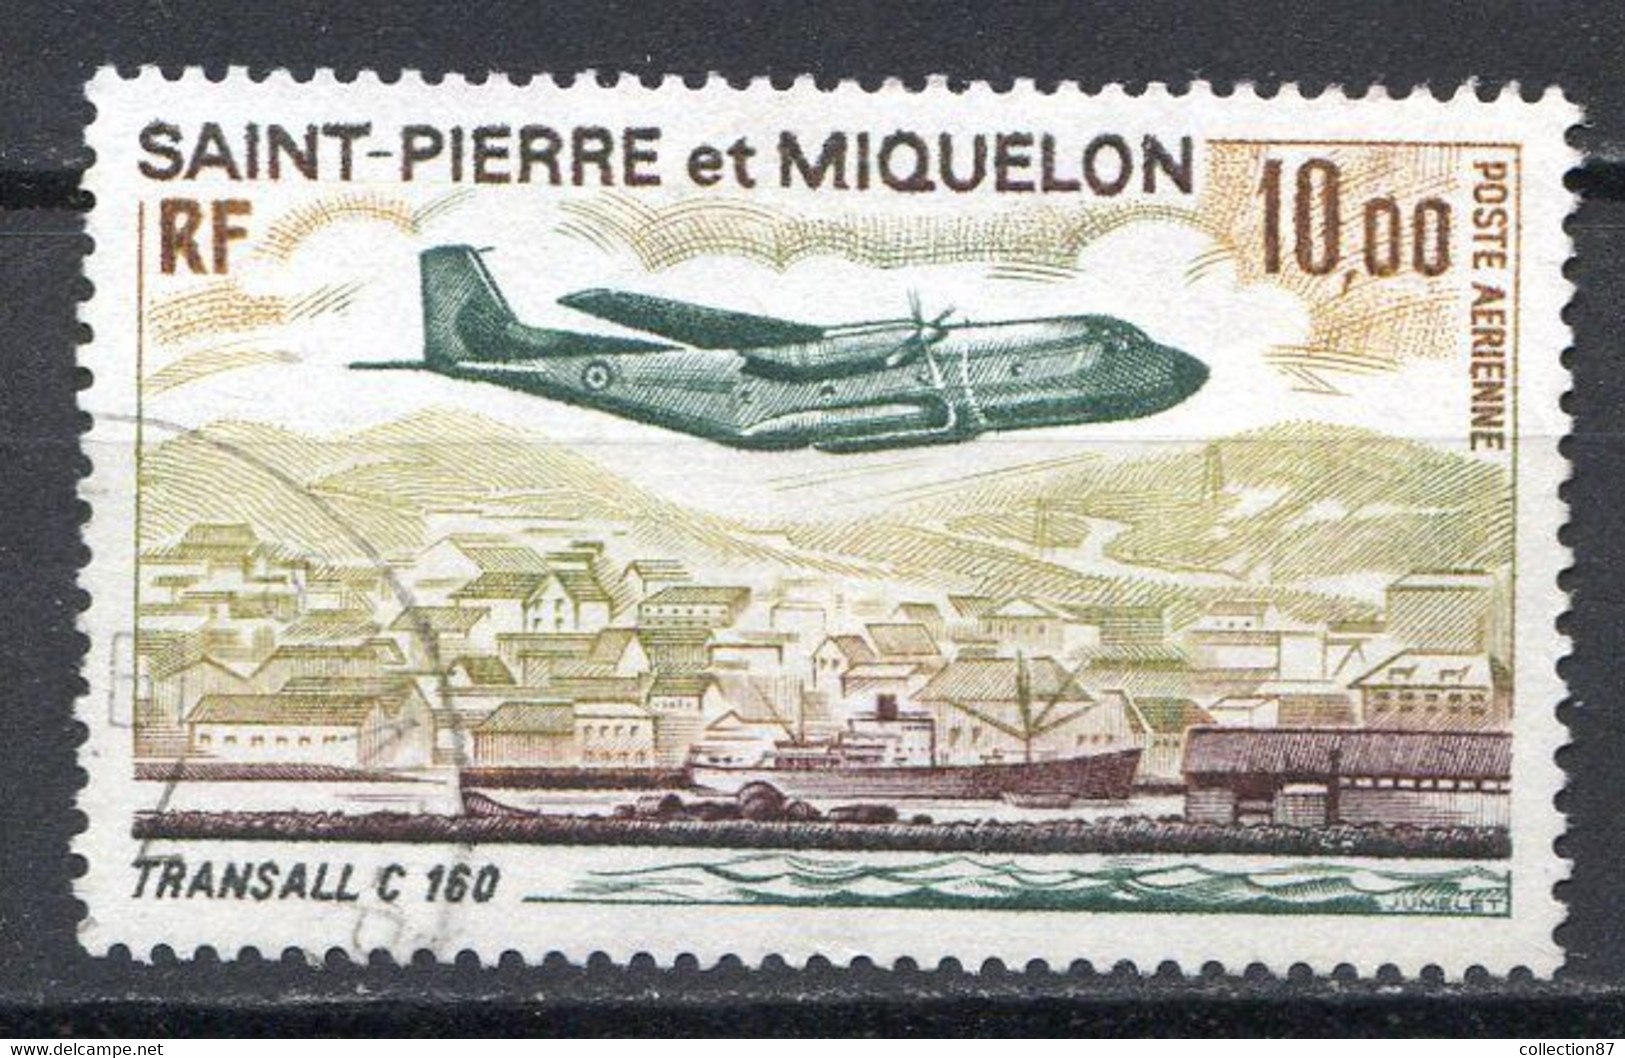 Réf 55 CL2 < -- SAINT PIERRE Et MIQUELON < Yvert PA N° 57 Ø < Oblitéré Ø Used < Cote 30.00 € - Used Stamps